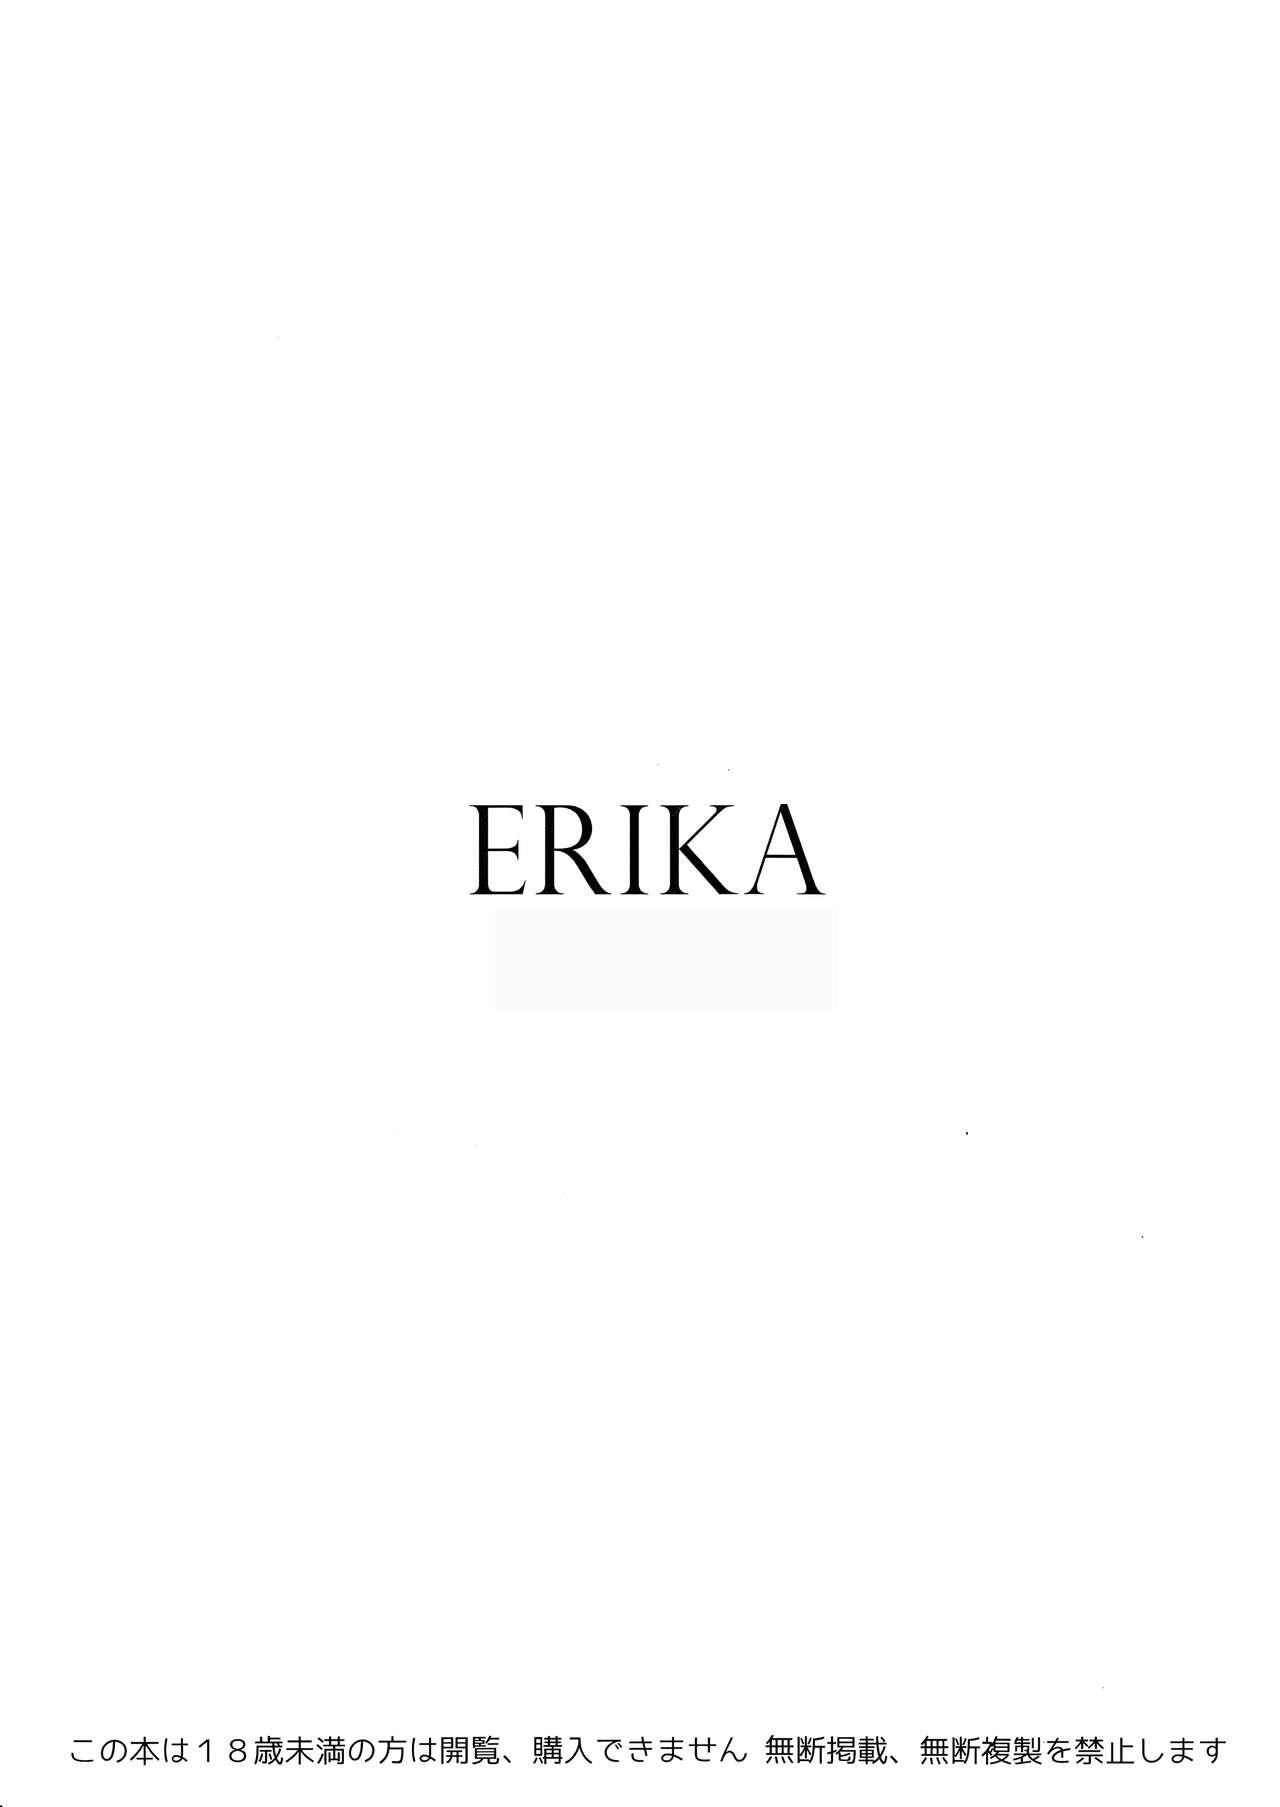 Caught ERIKA Vol. 1-3 - Girls und panzer Ejaculation - Picture 3